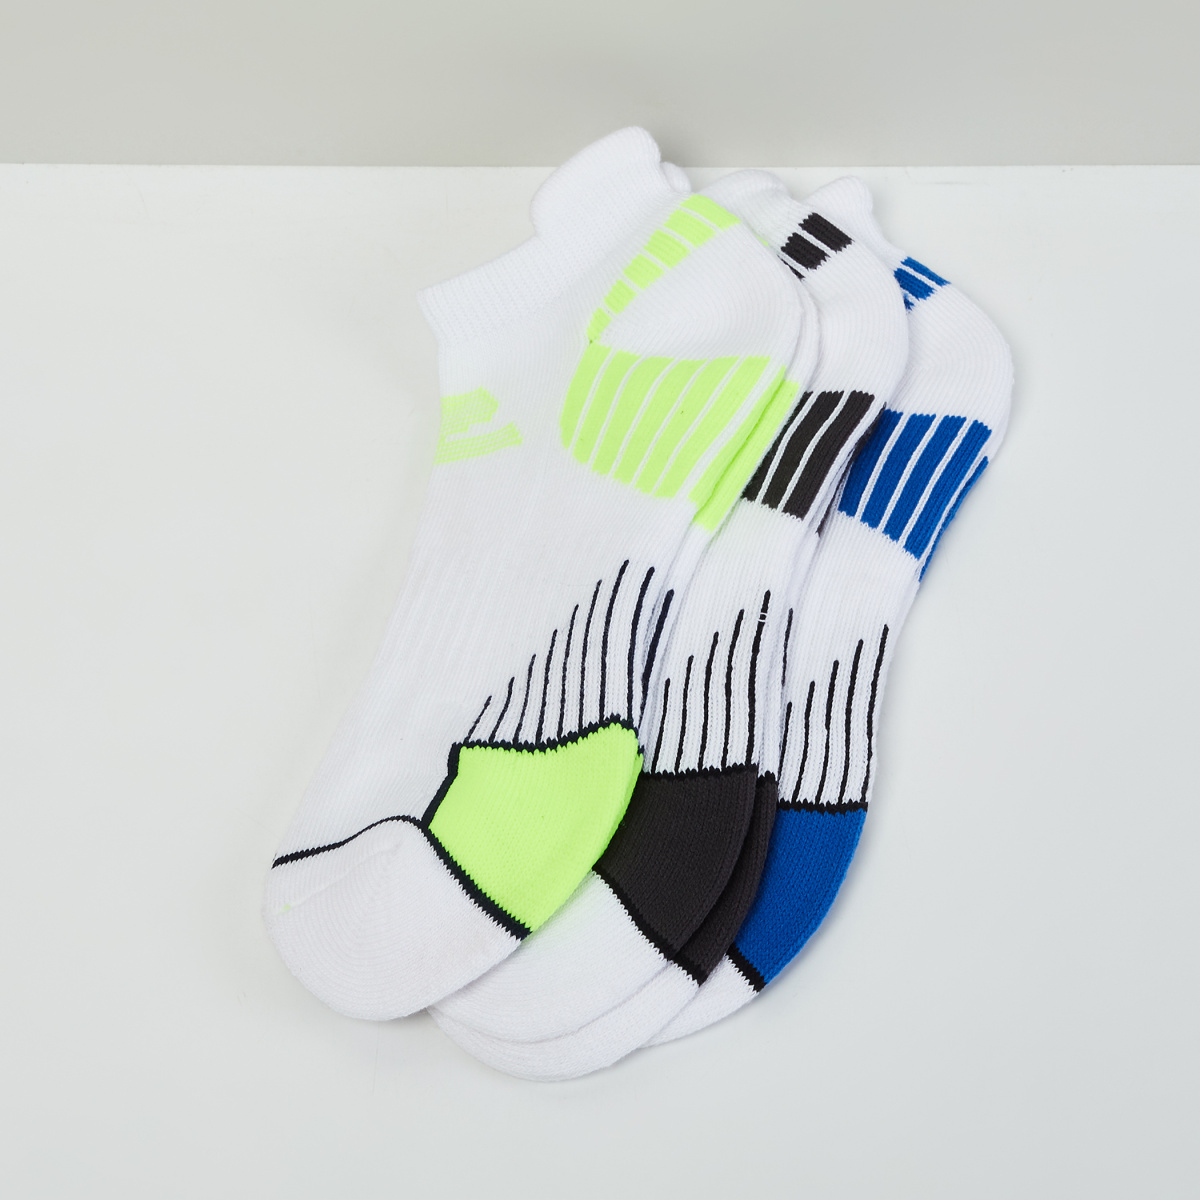 MAX Printed Socks- Set of 3